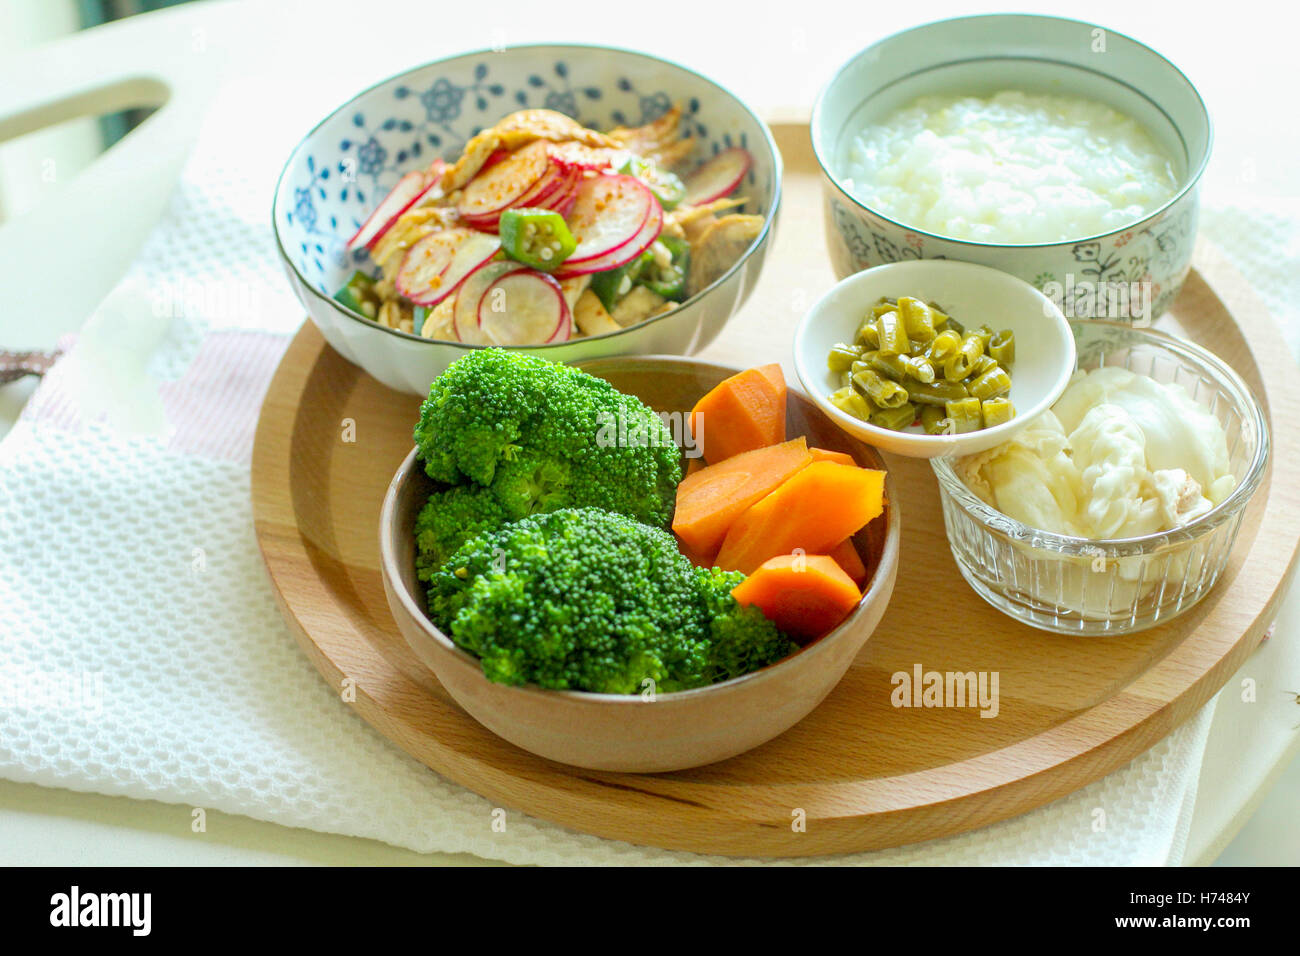 Repas sains avec le brocoli, les pommes de terre et congee Banque D'Images